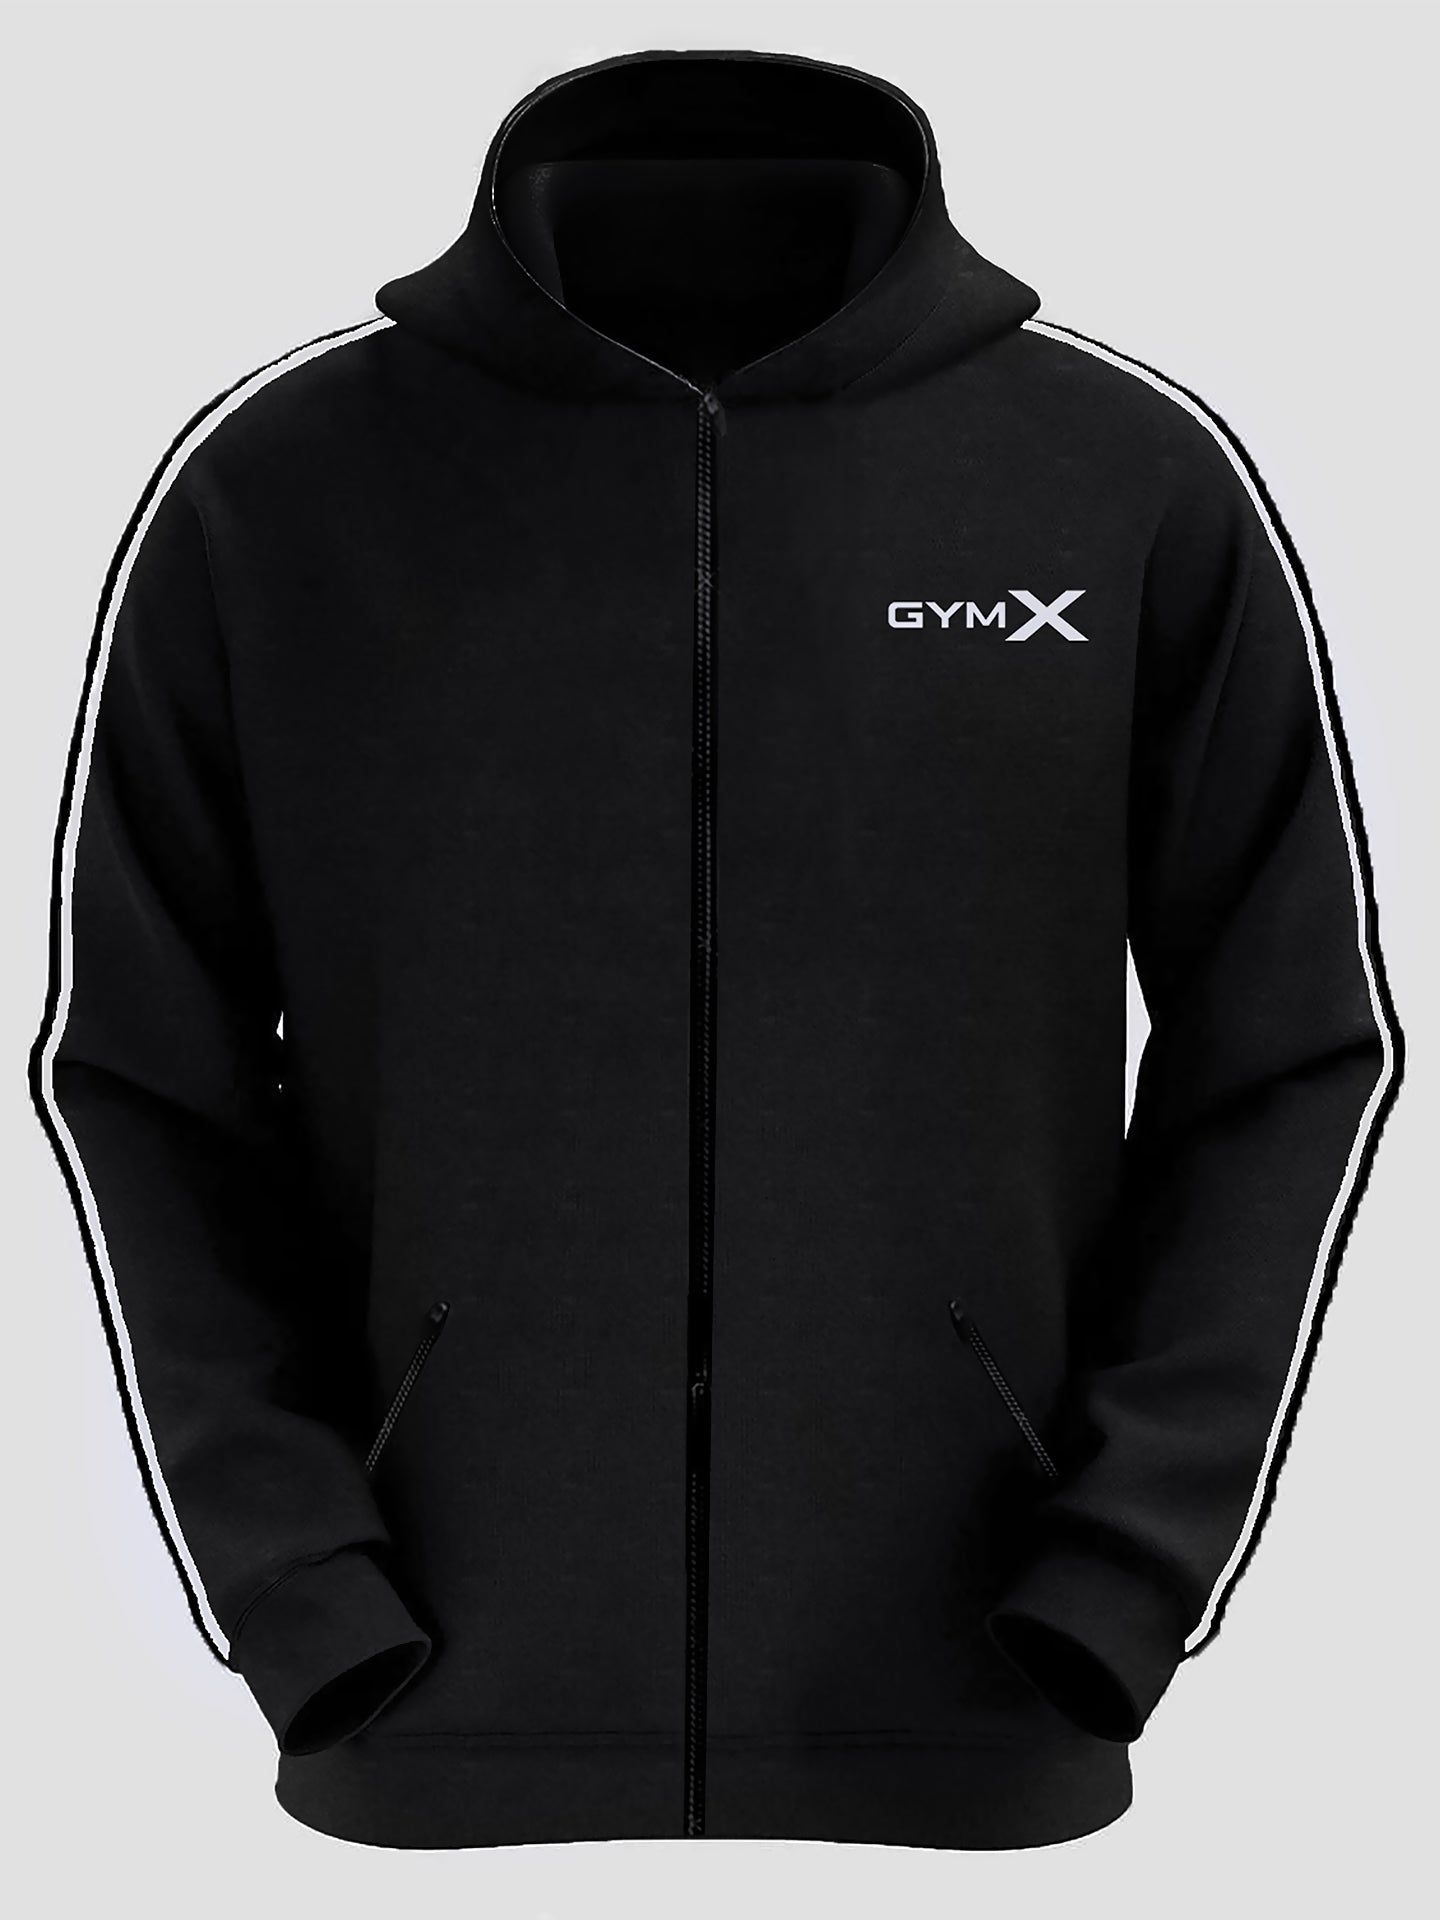 Venge Black GymX Hoodie - Sale